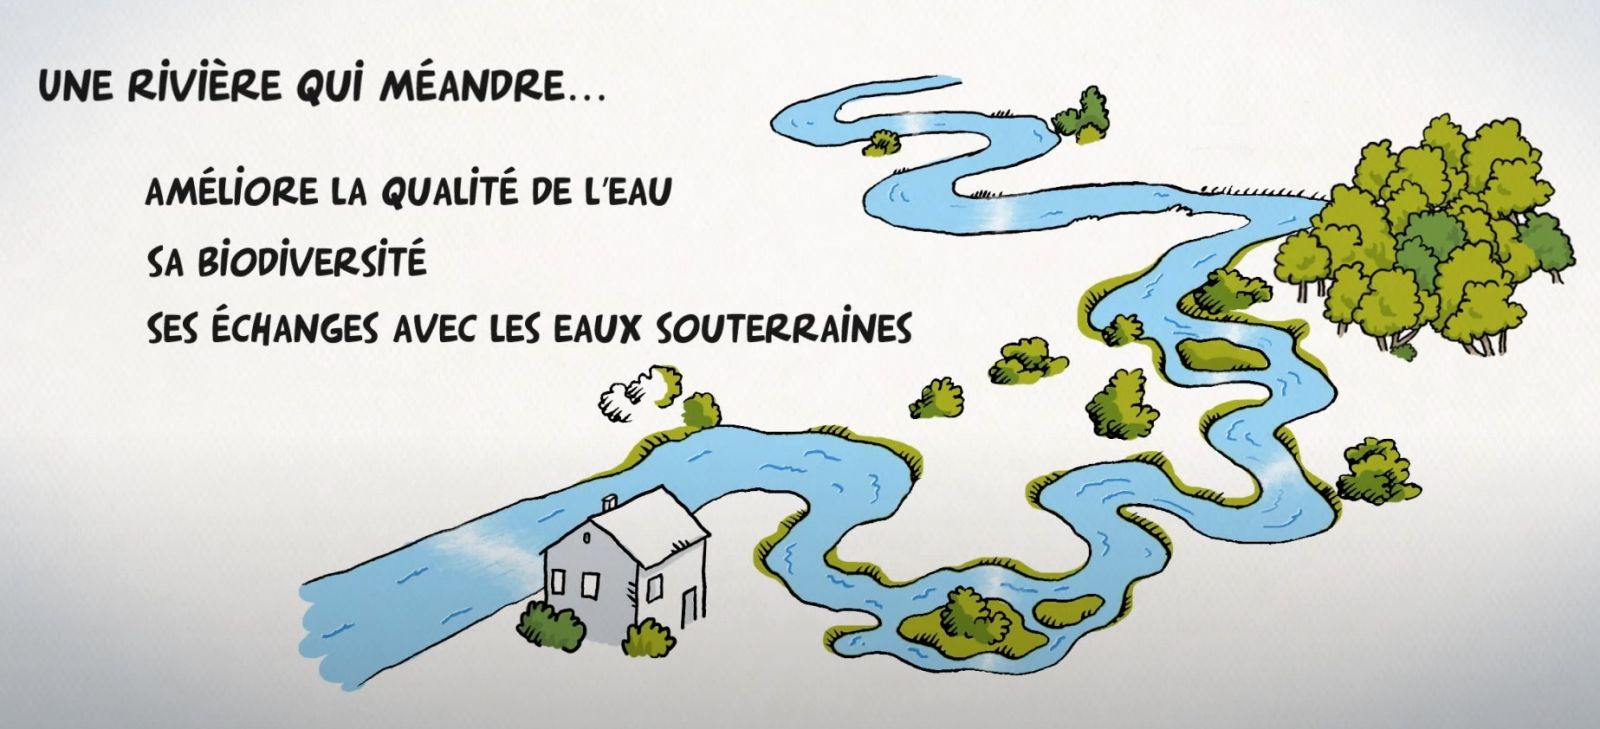 film d'animation réalisé par l'Agence de l'Eau Rhône Méditerranée Corse en 2015